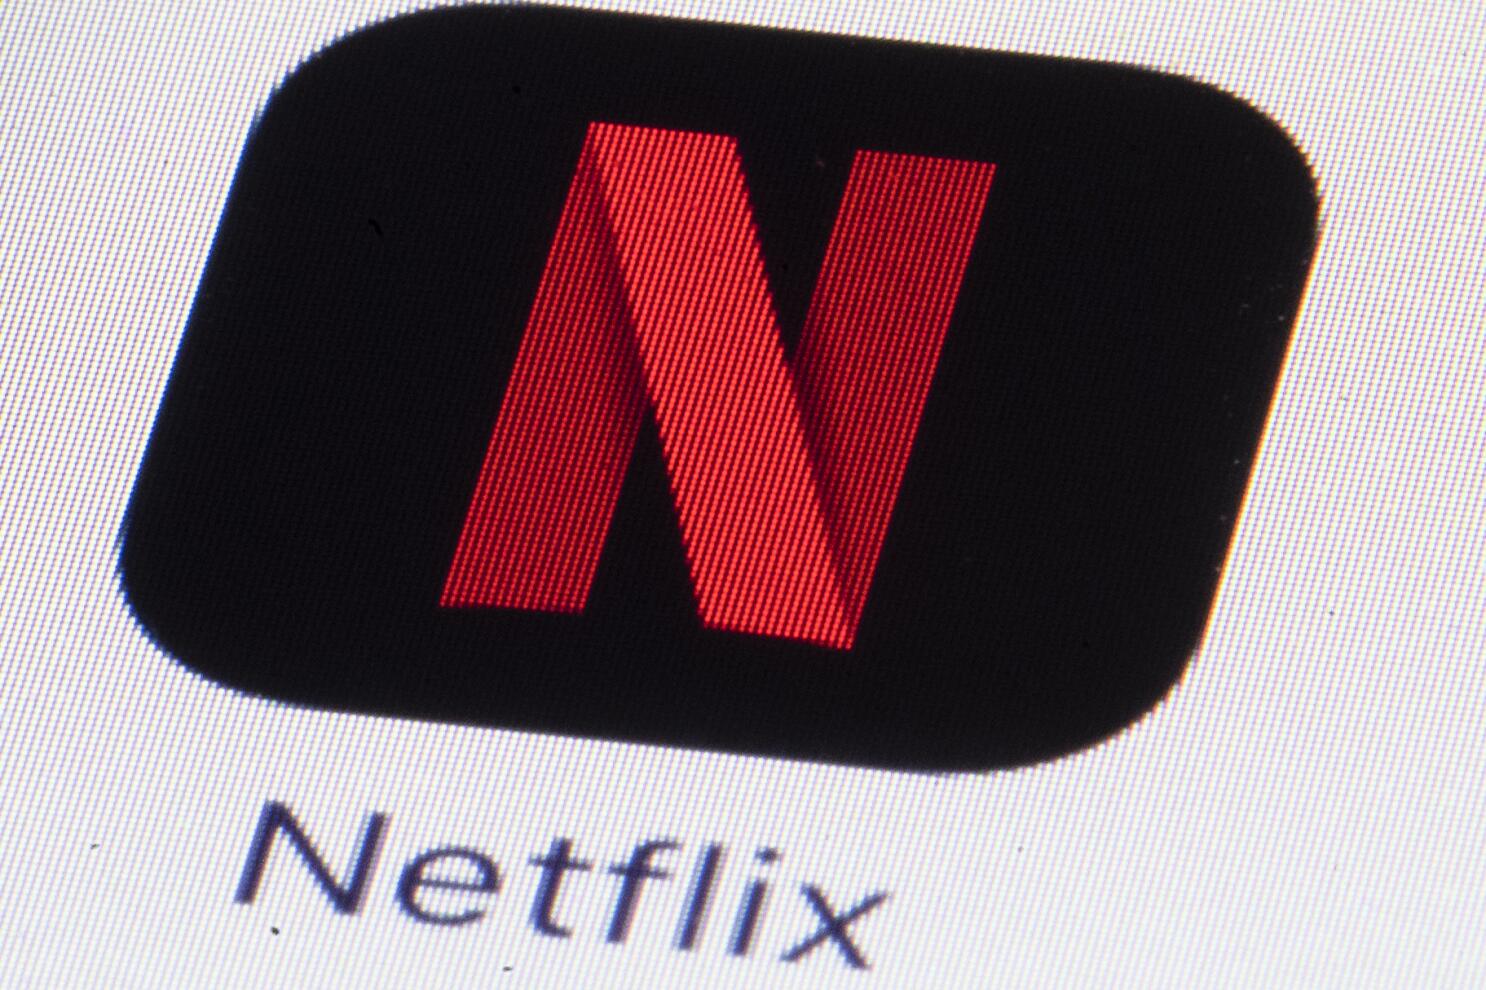 Netflix Starting From $6.99 a Month - About Netflix